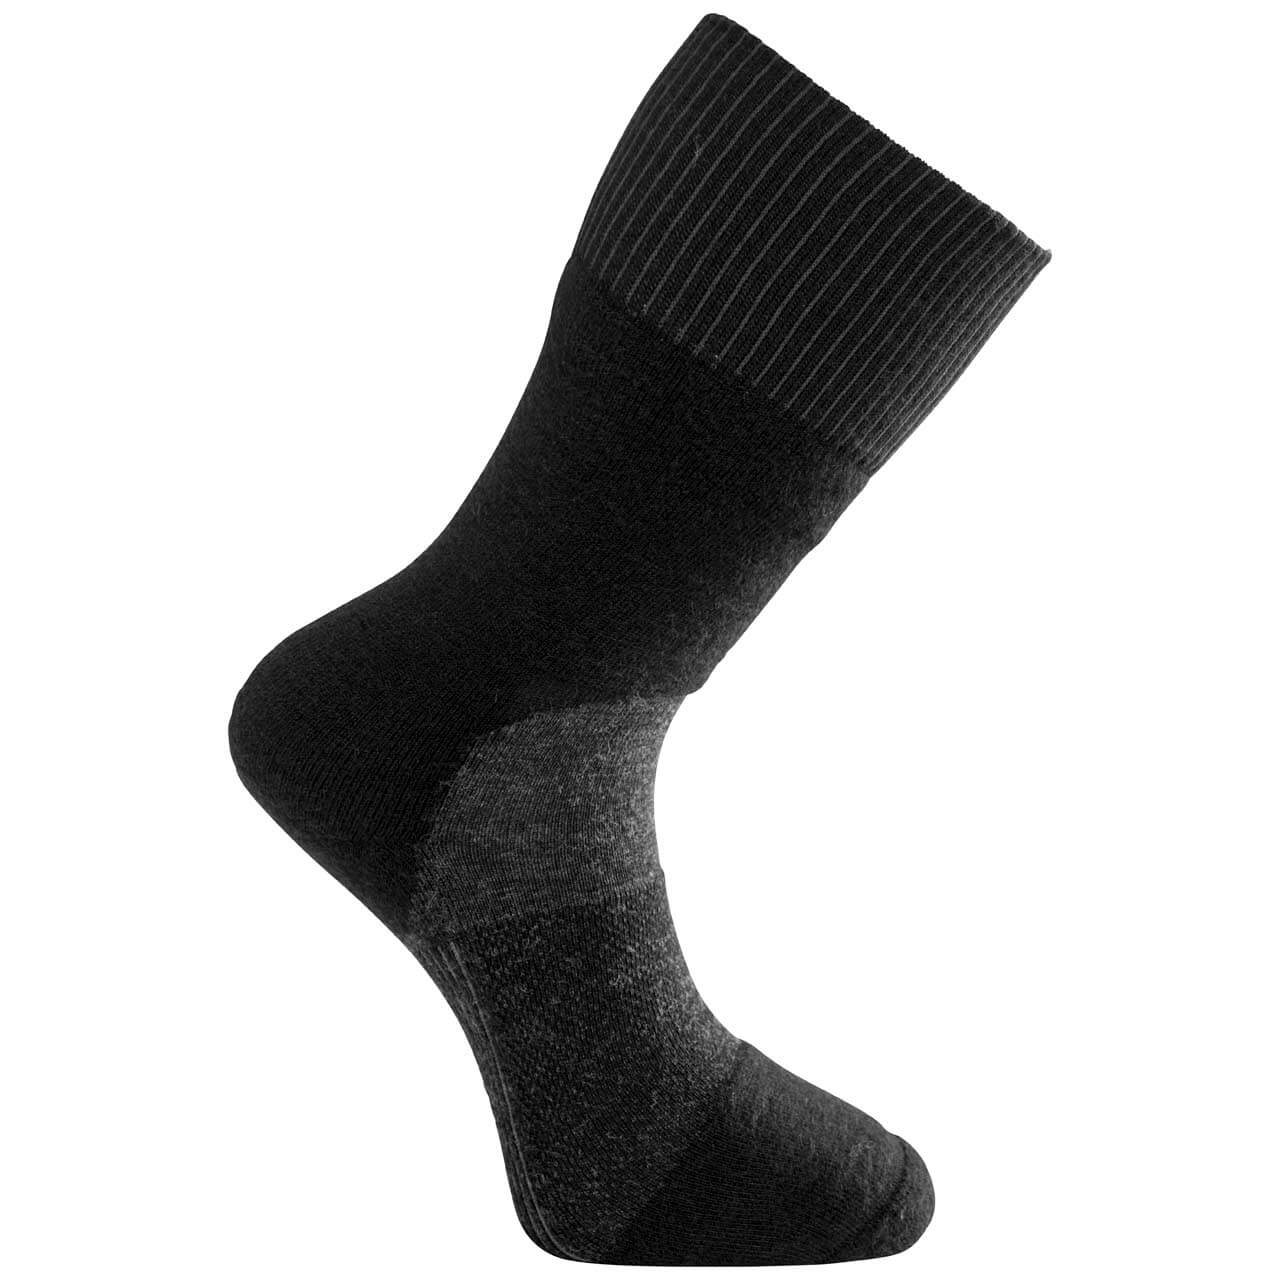 Woolpower Skilled Socken 400 - Black/Dark Grey, 40-44